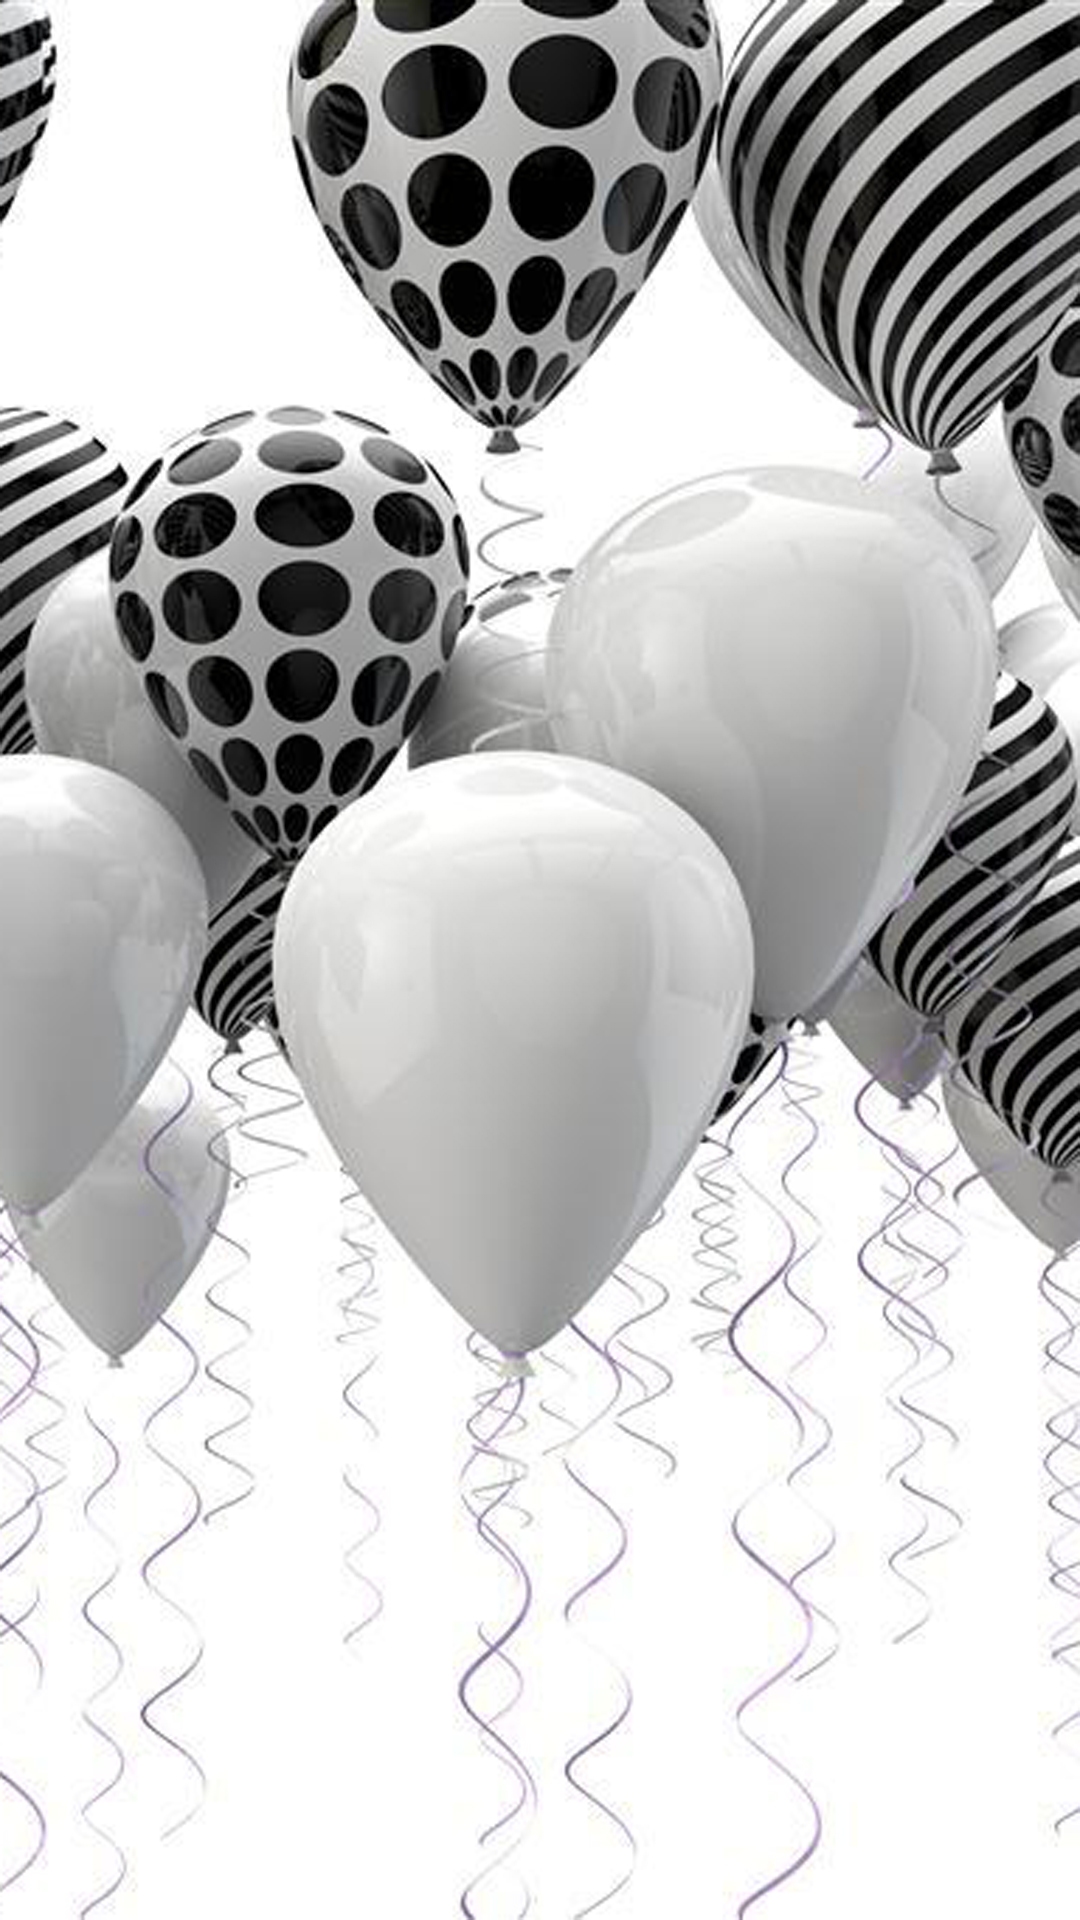 saftige tapeten,ballon,schwarz und weiß,partyversorgung,herz,monochrome fotografie